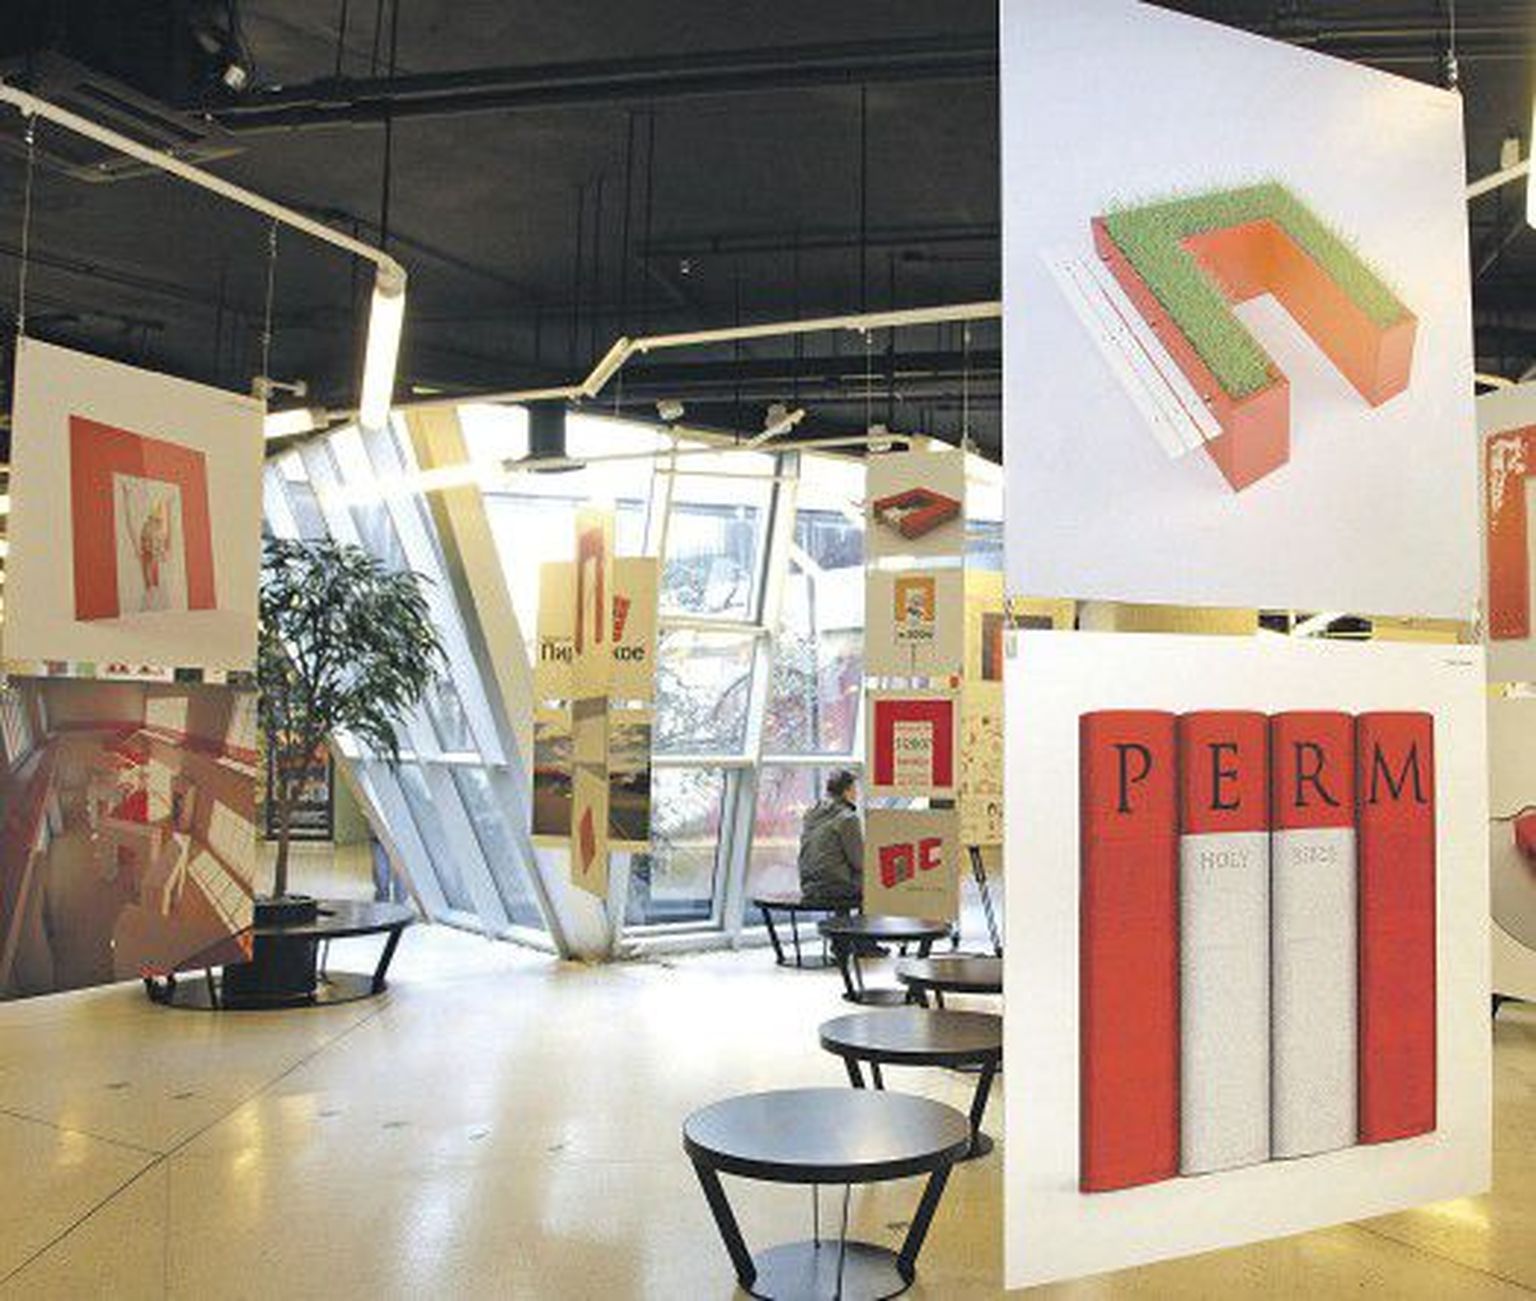 Примеры дизайнерских решений с использованием логотипа города Перми.